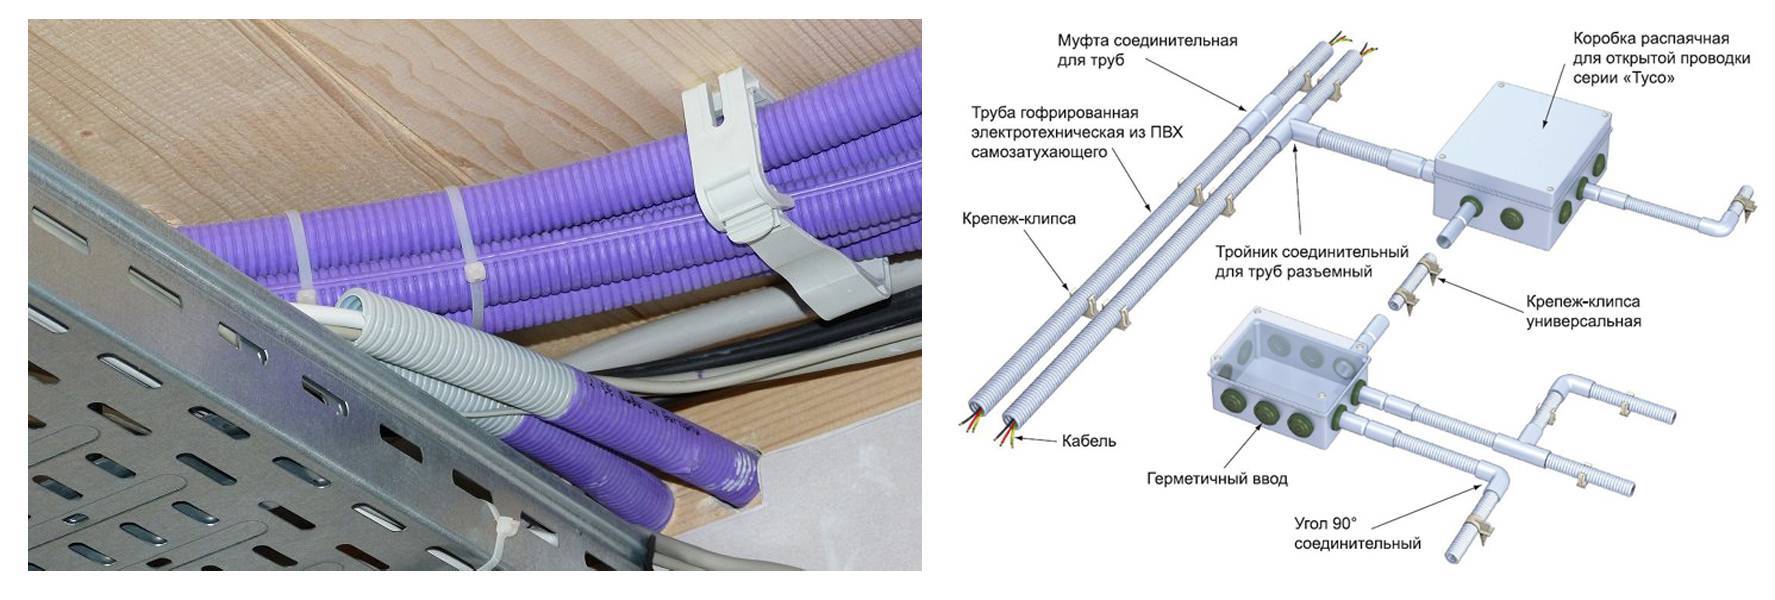 Прокладка кабеля в гофрошланге: кондуктор, пылесос, магнит